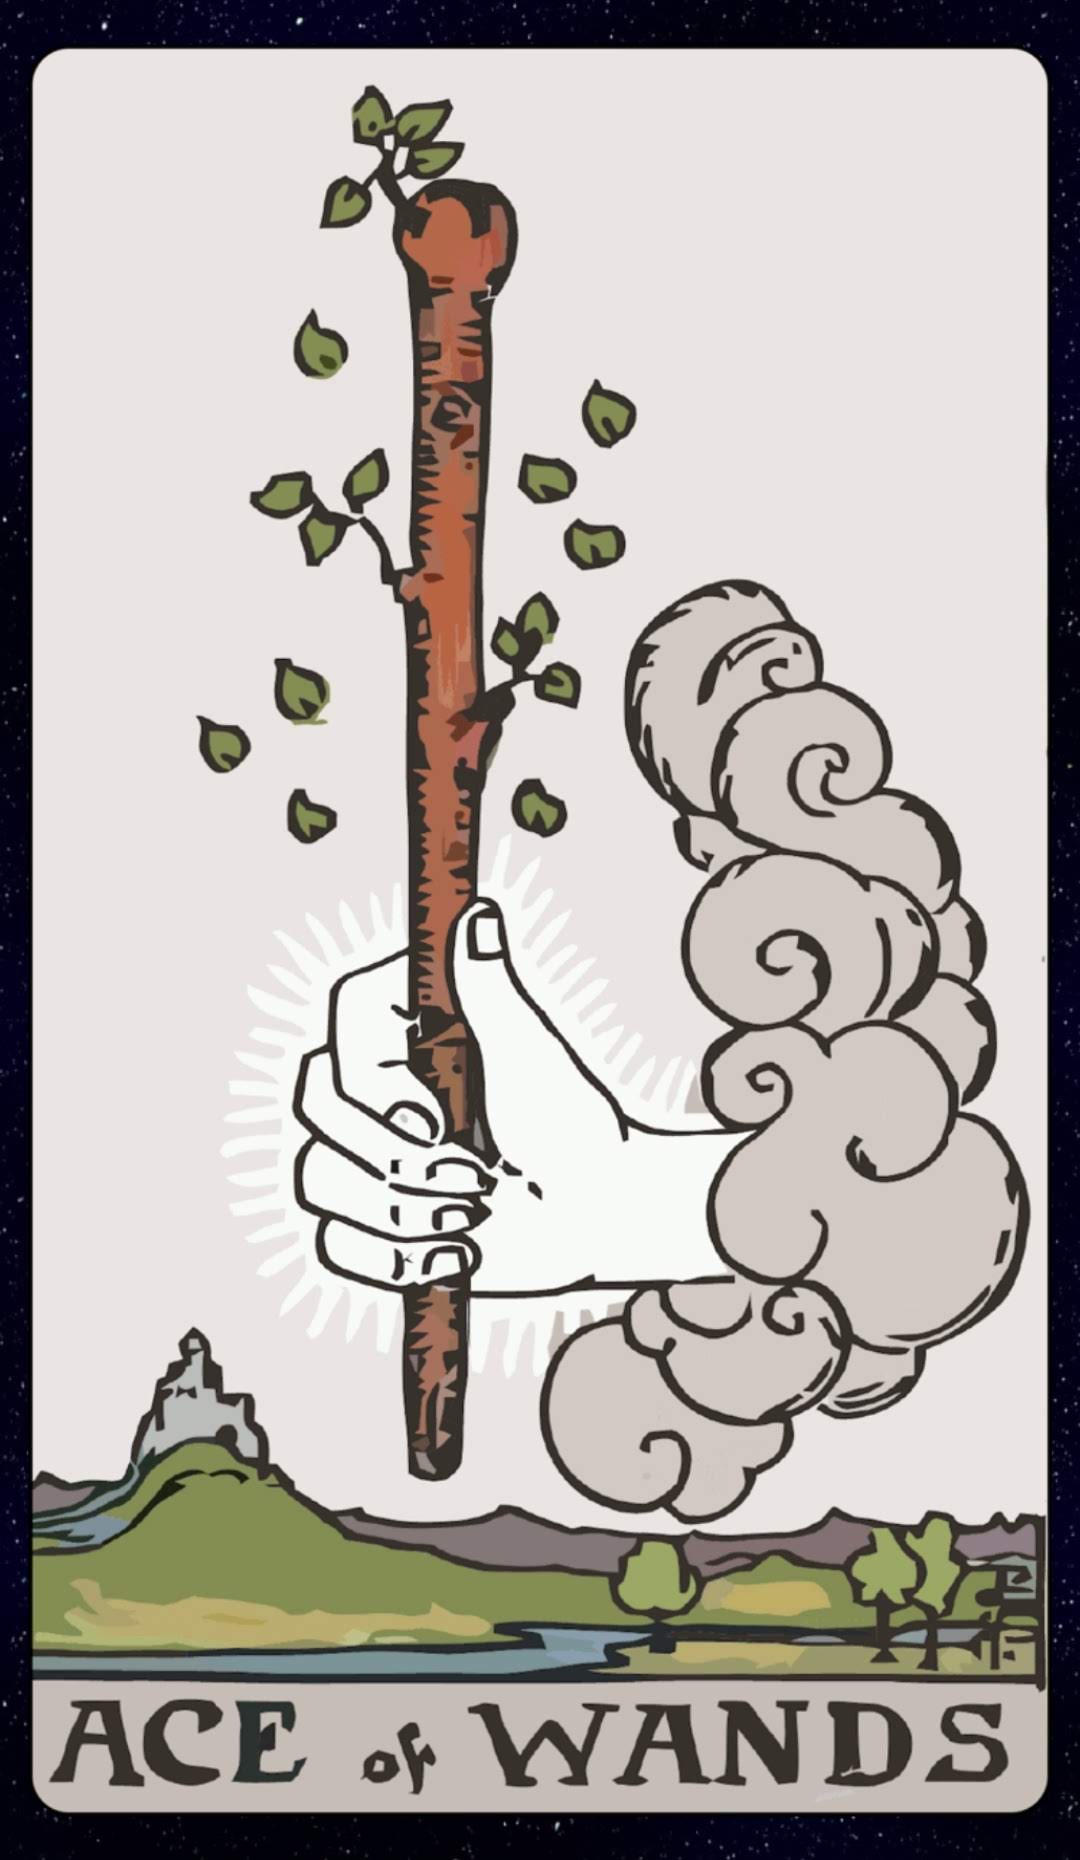 um print da tela do app galaxy tarot mostrando a carta Ace of Wands, que é uma mão saindo de uma coisa parecida com uma nuvem, um vento ou algo assim, segurando uma varinha 